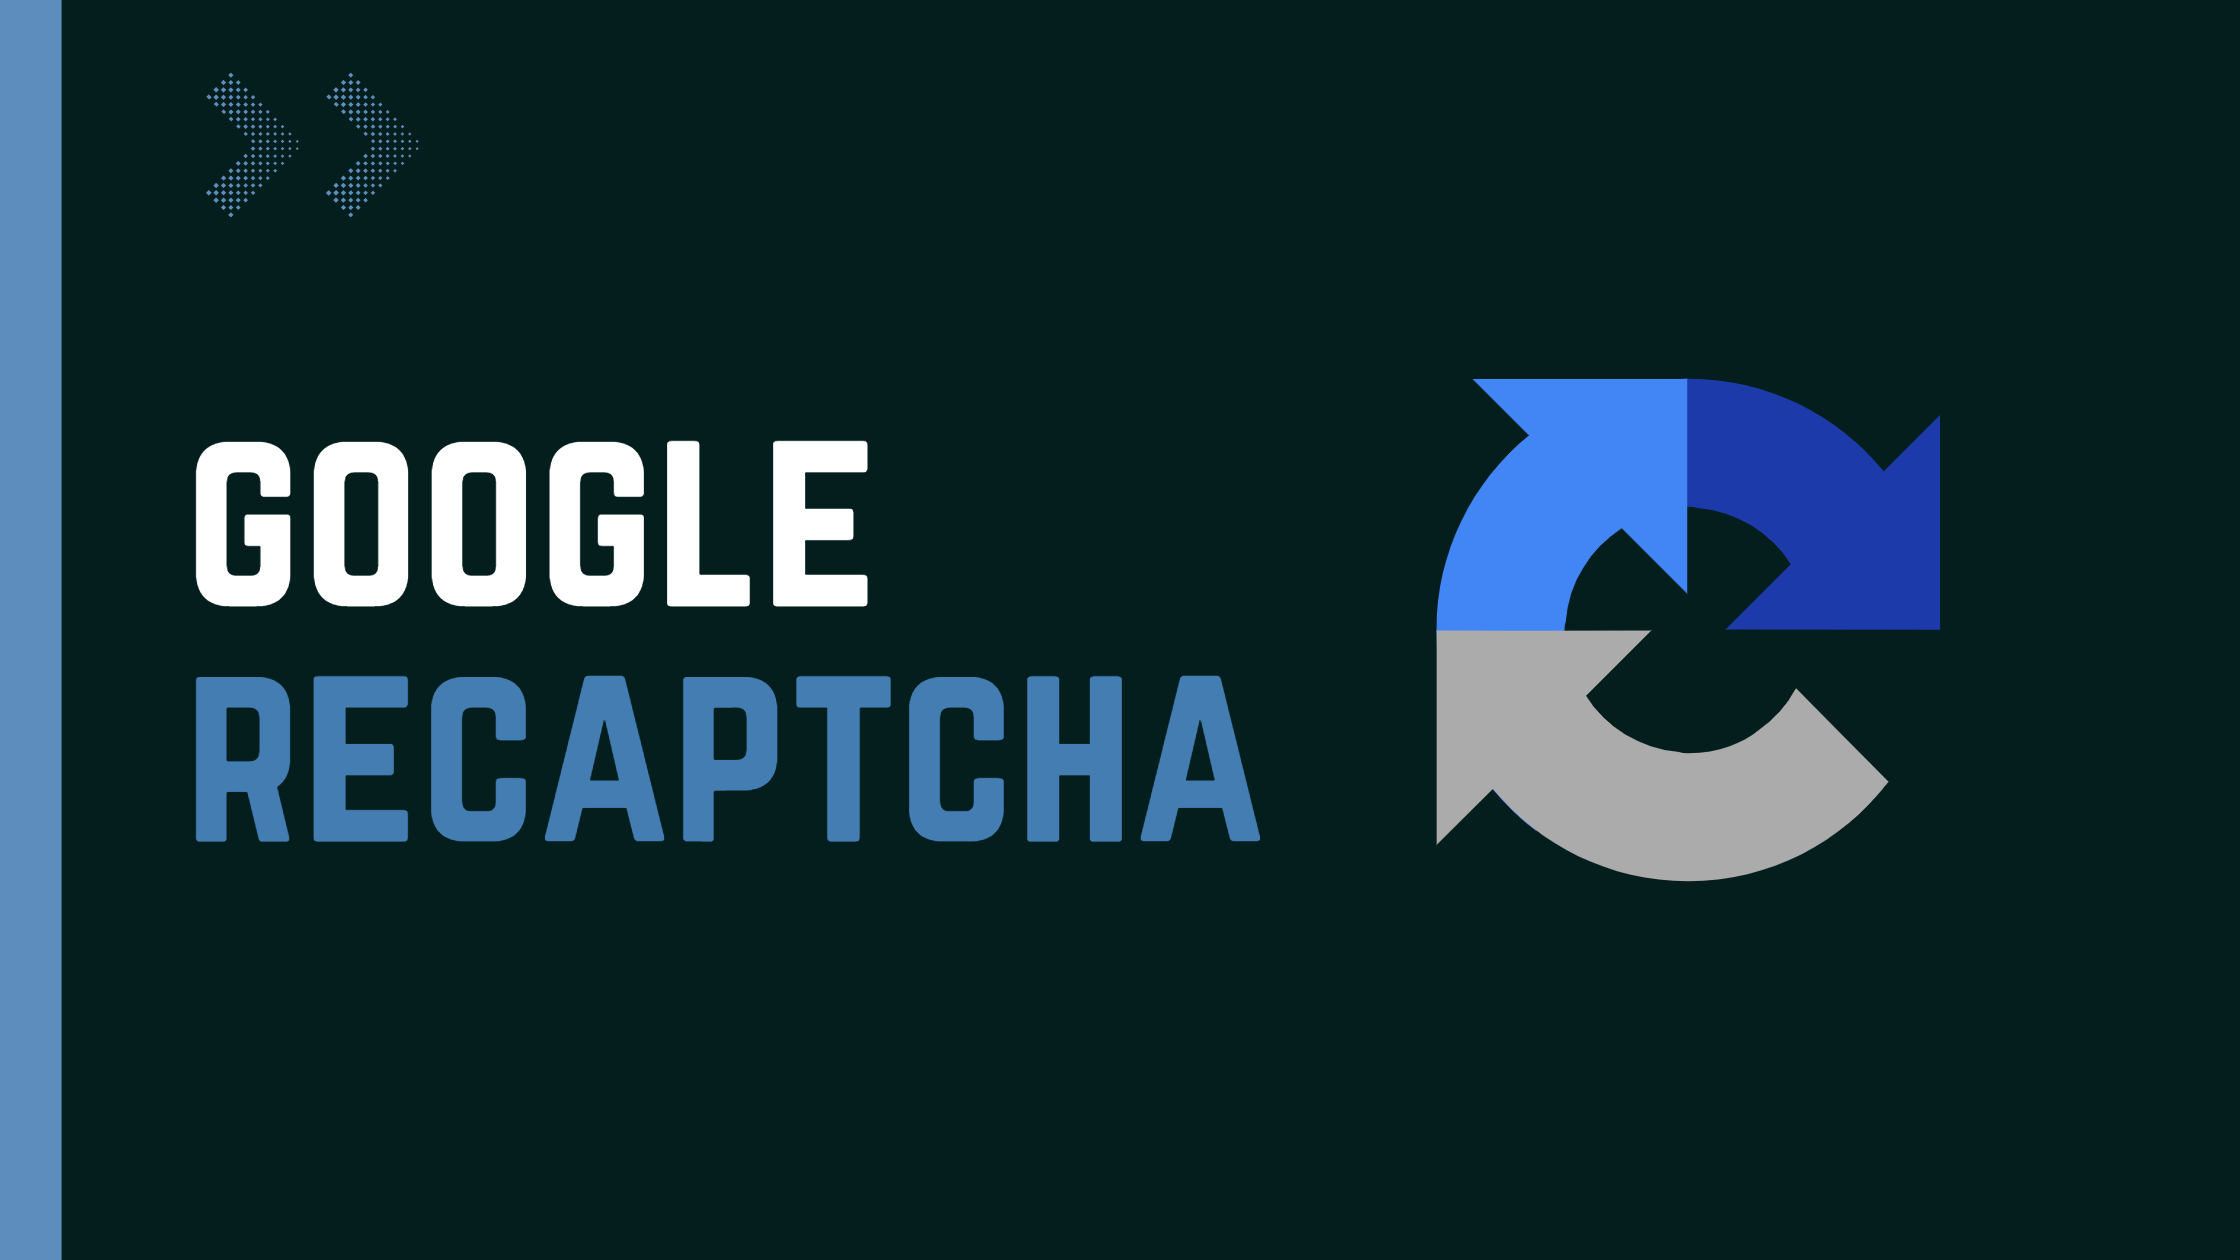 Implementing Google's No Captcha reCaptcha In ASP.NET